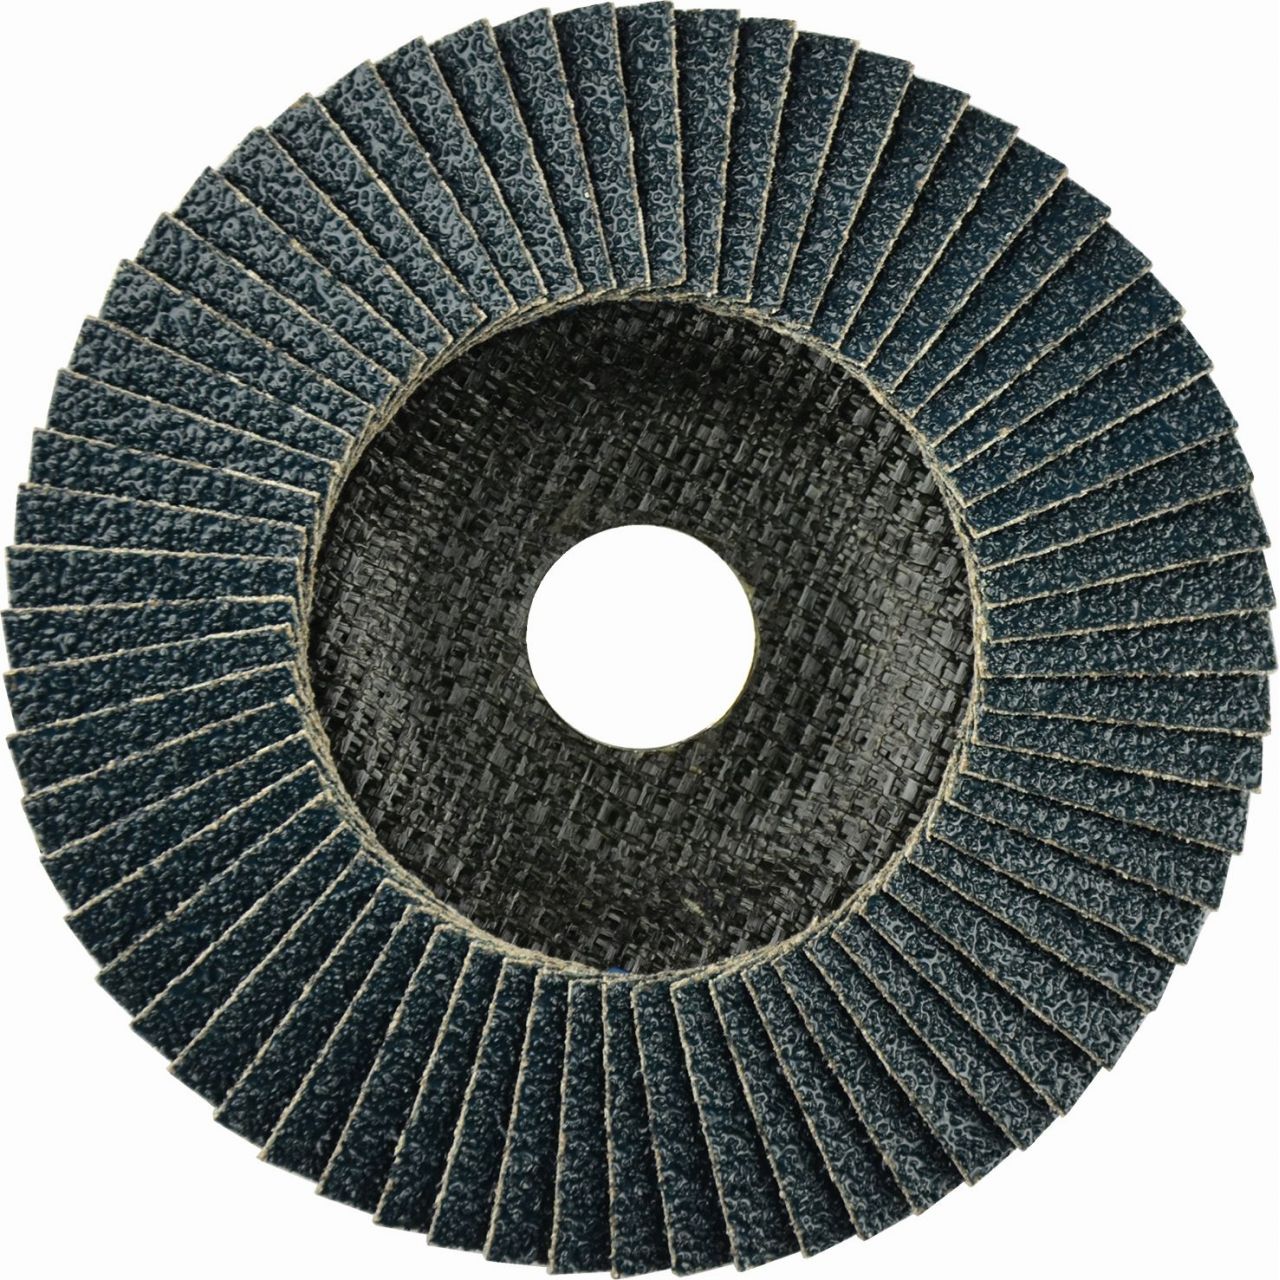 Disco de láminas abrasivo Zirconio ZIRCON PLUS (G-AZ) de 115 mm grano 80 y base plana